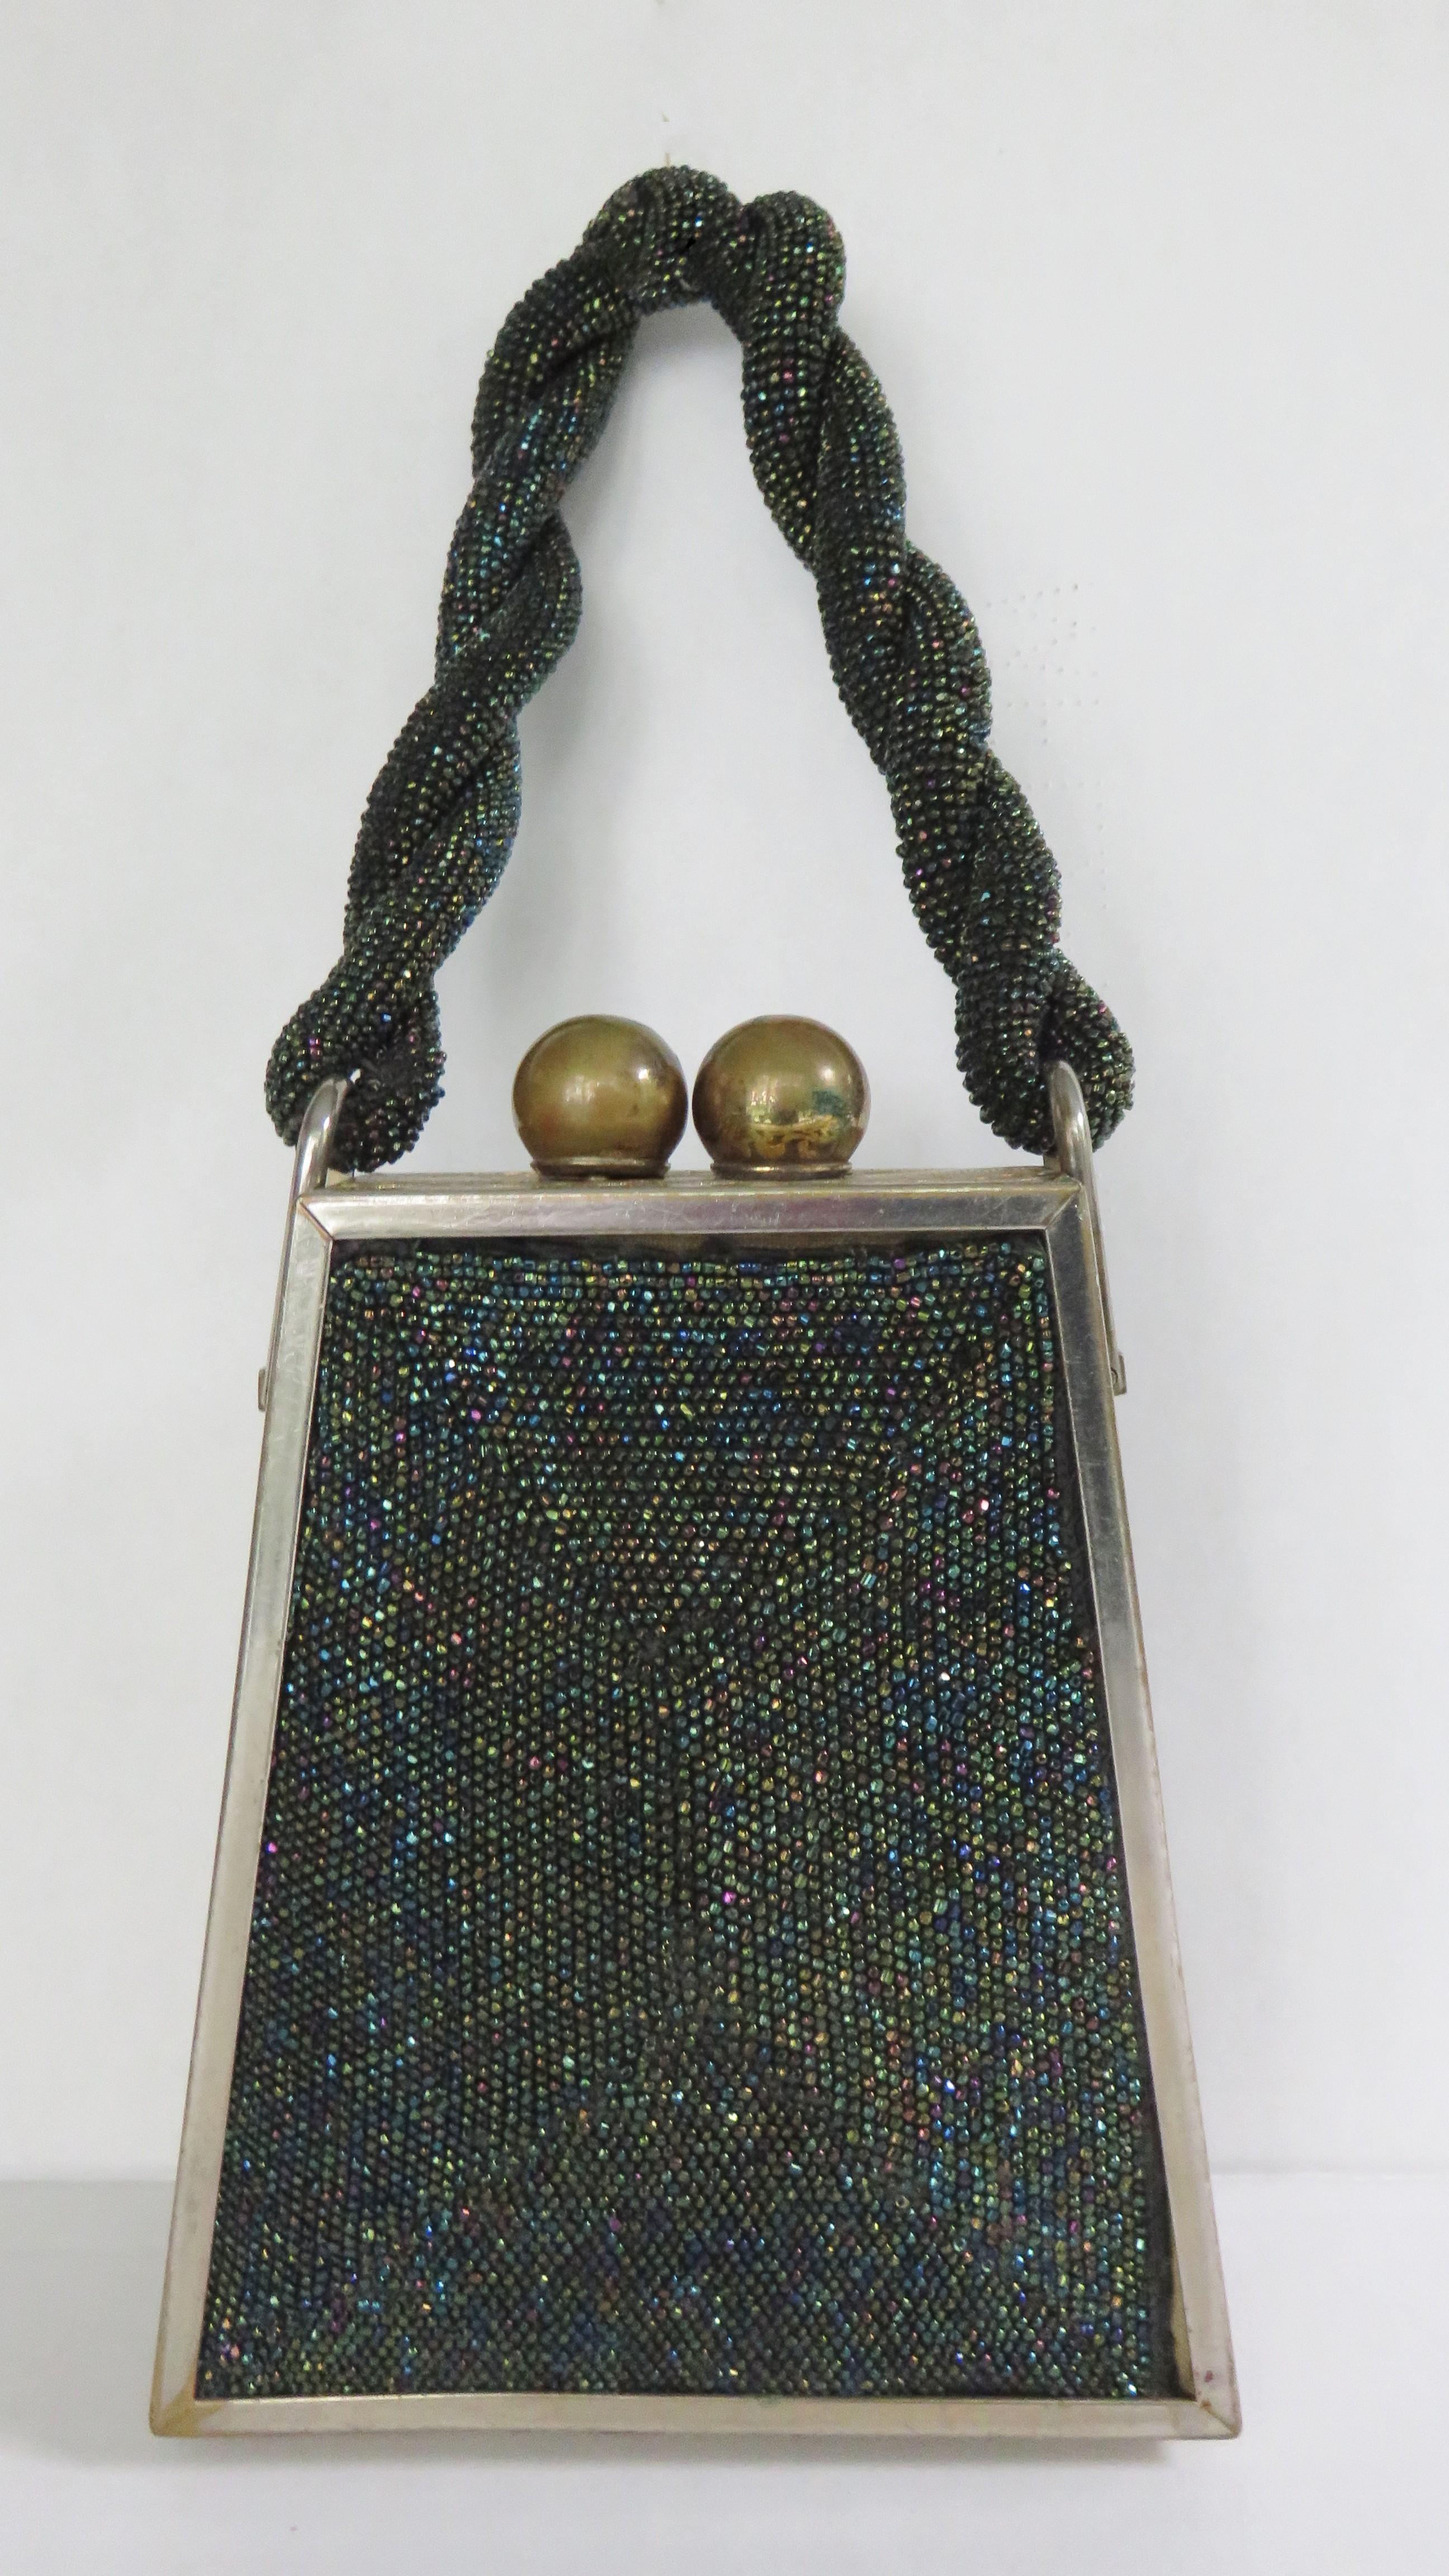 Un magnifique porte-monnaie triangulaire en perles de carnaval en verre noir.  Il est doté d'une poignée torsadée, d'un fermoir à bille en métal doré, d'un cadre élaboré en filigrane de métal doré et d'une doublure en soie avec deux poches